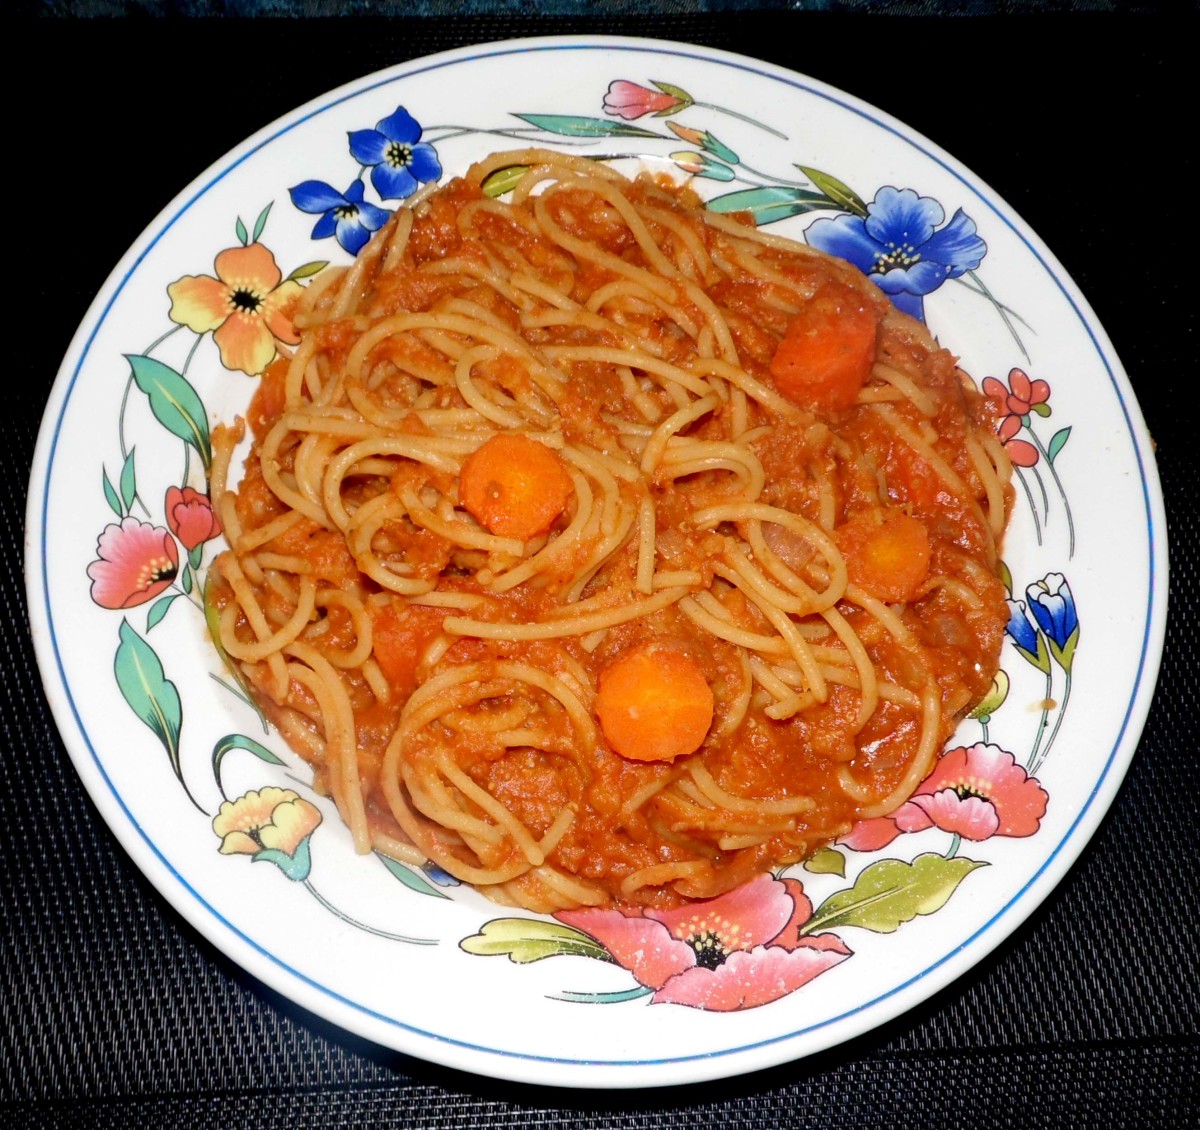 Italian lentils and spaghetti